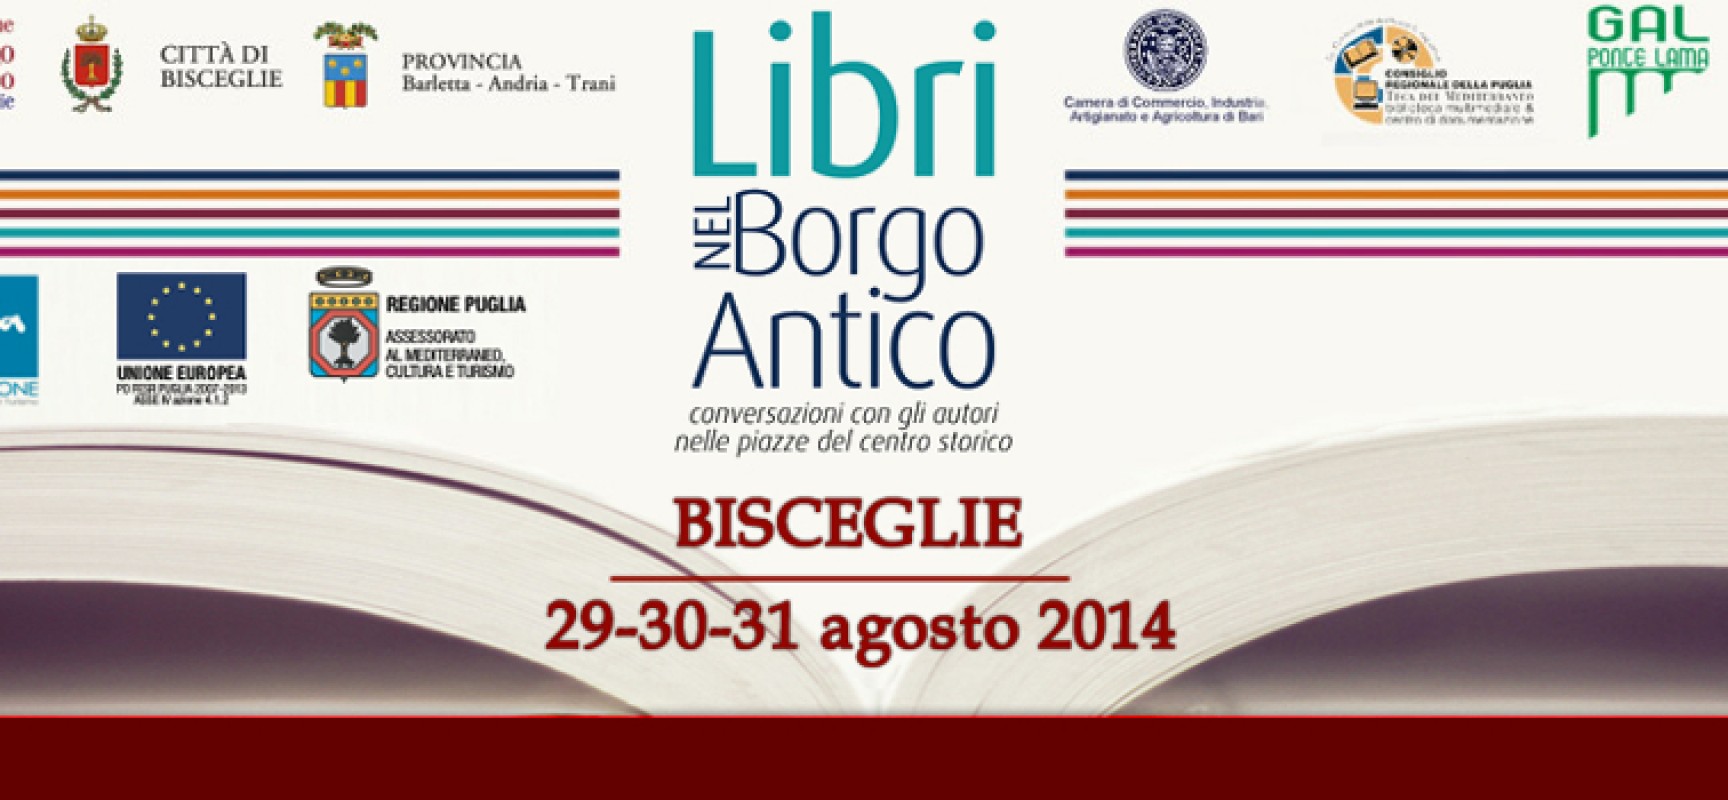 Libri nel Borgo Antico, si comincia: tutti gli autori impegnati venerdì 29 agosto